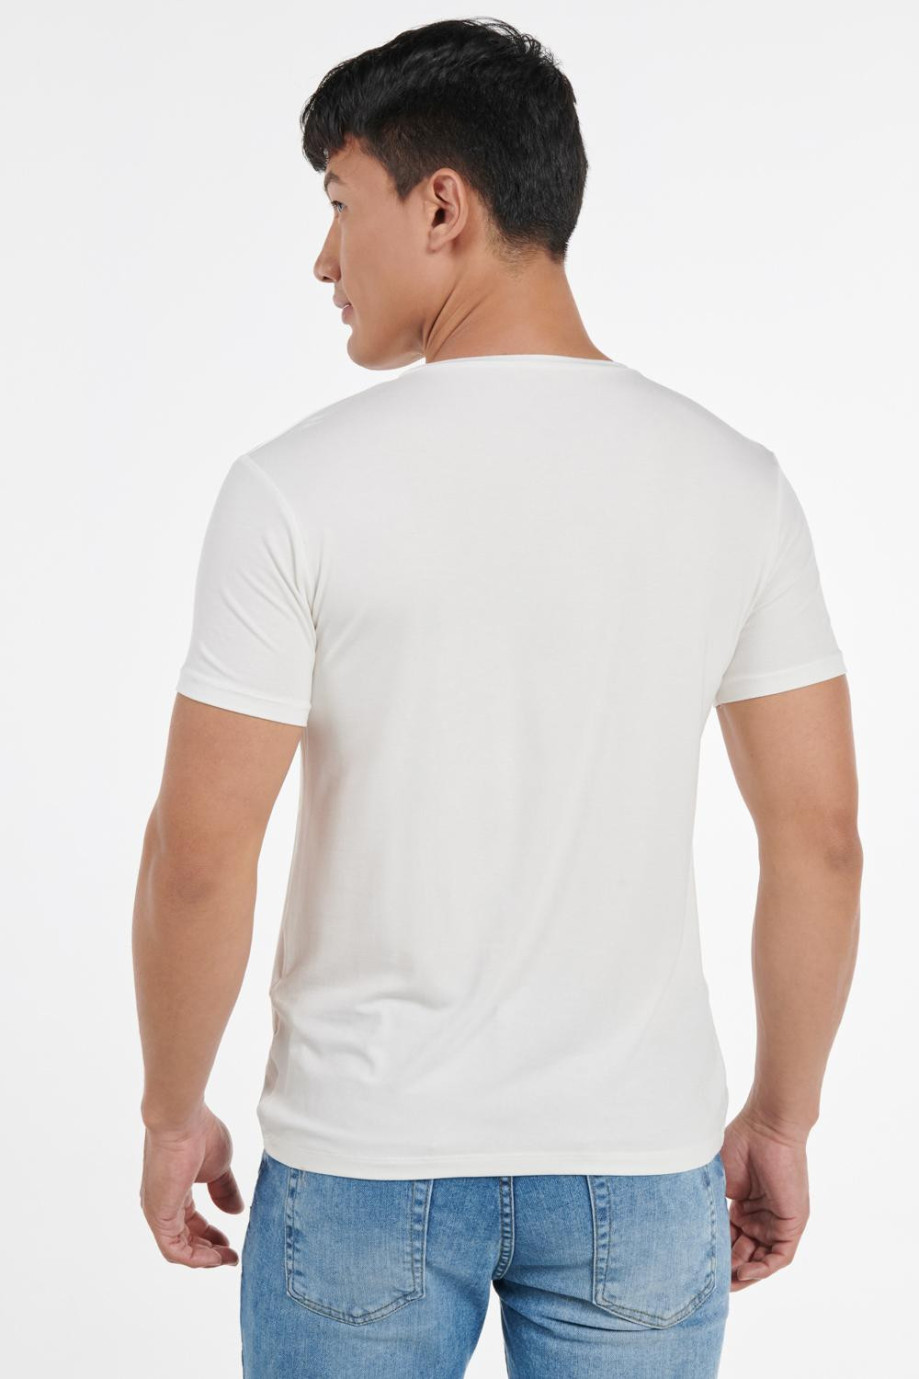 Camiseta manga corta unicolor con sesgo en cuello redondo